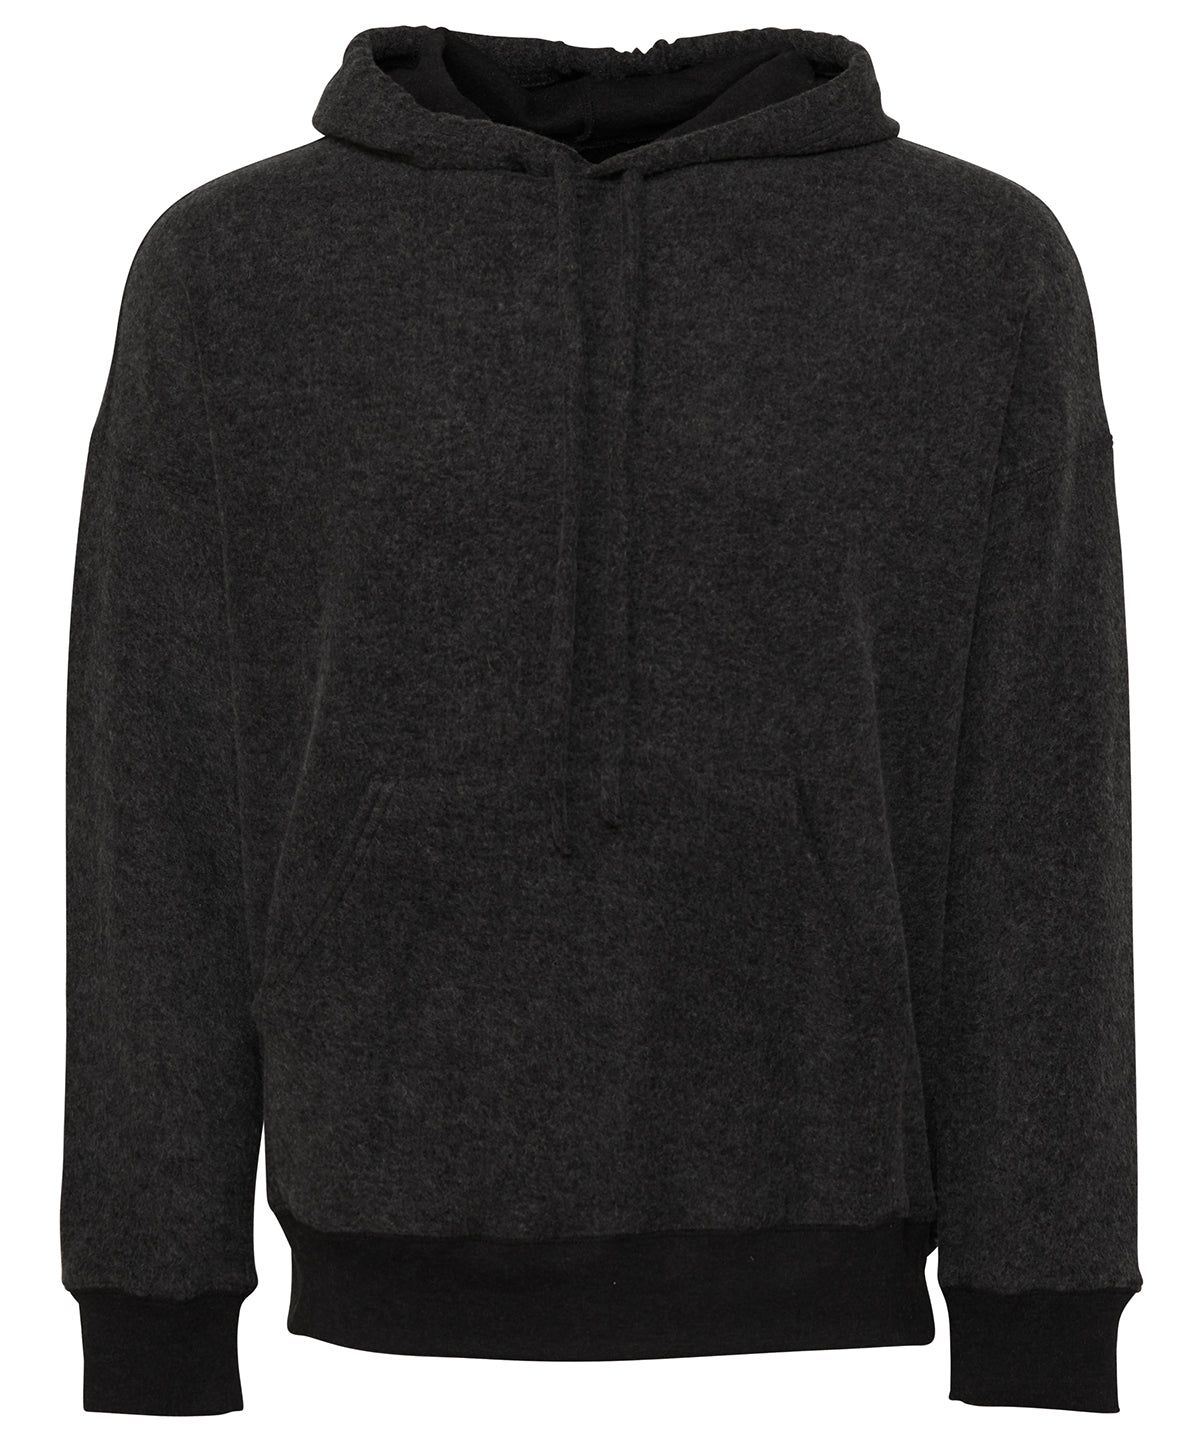 Personalised Hoodies - Heather Grey Bella Canvas Unisex sueded fleece pullover hoodie